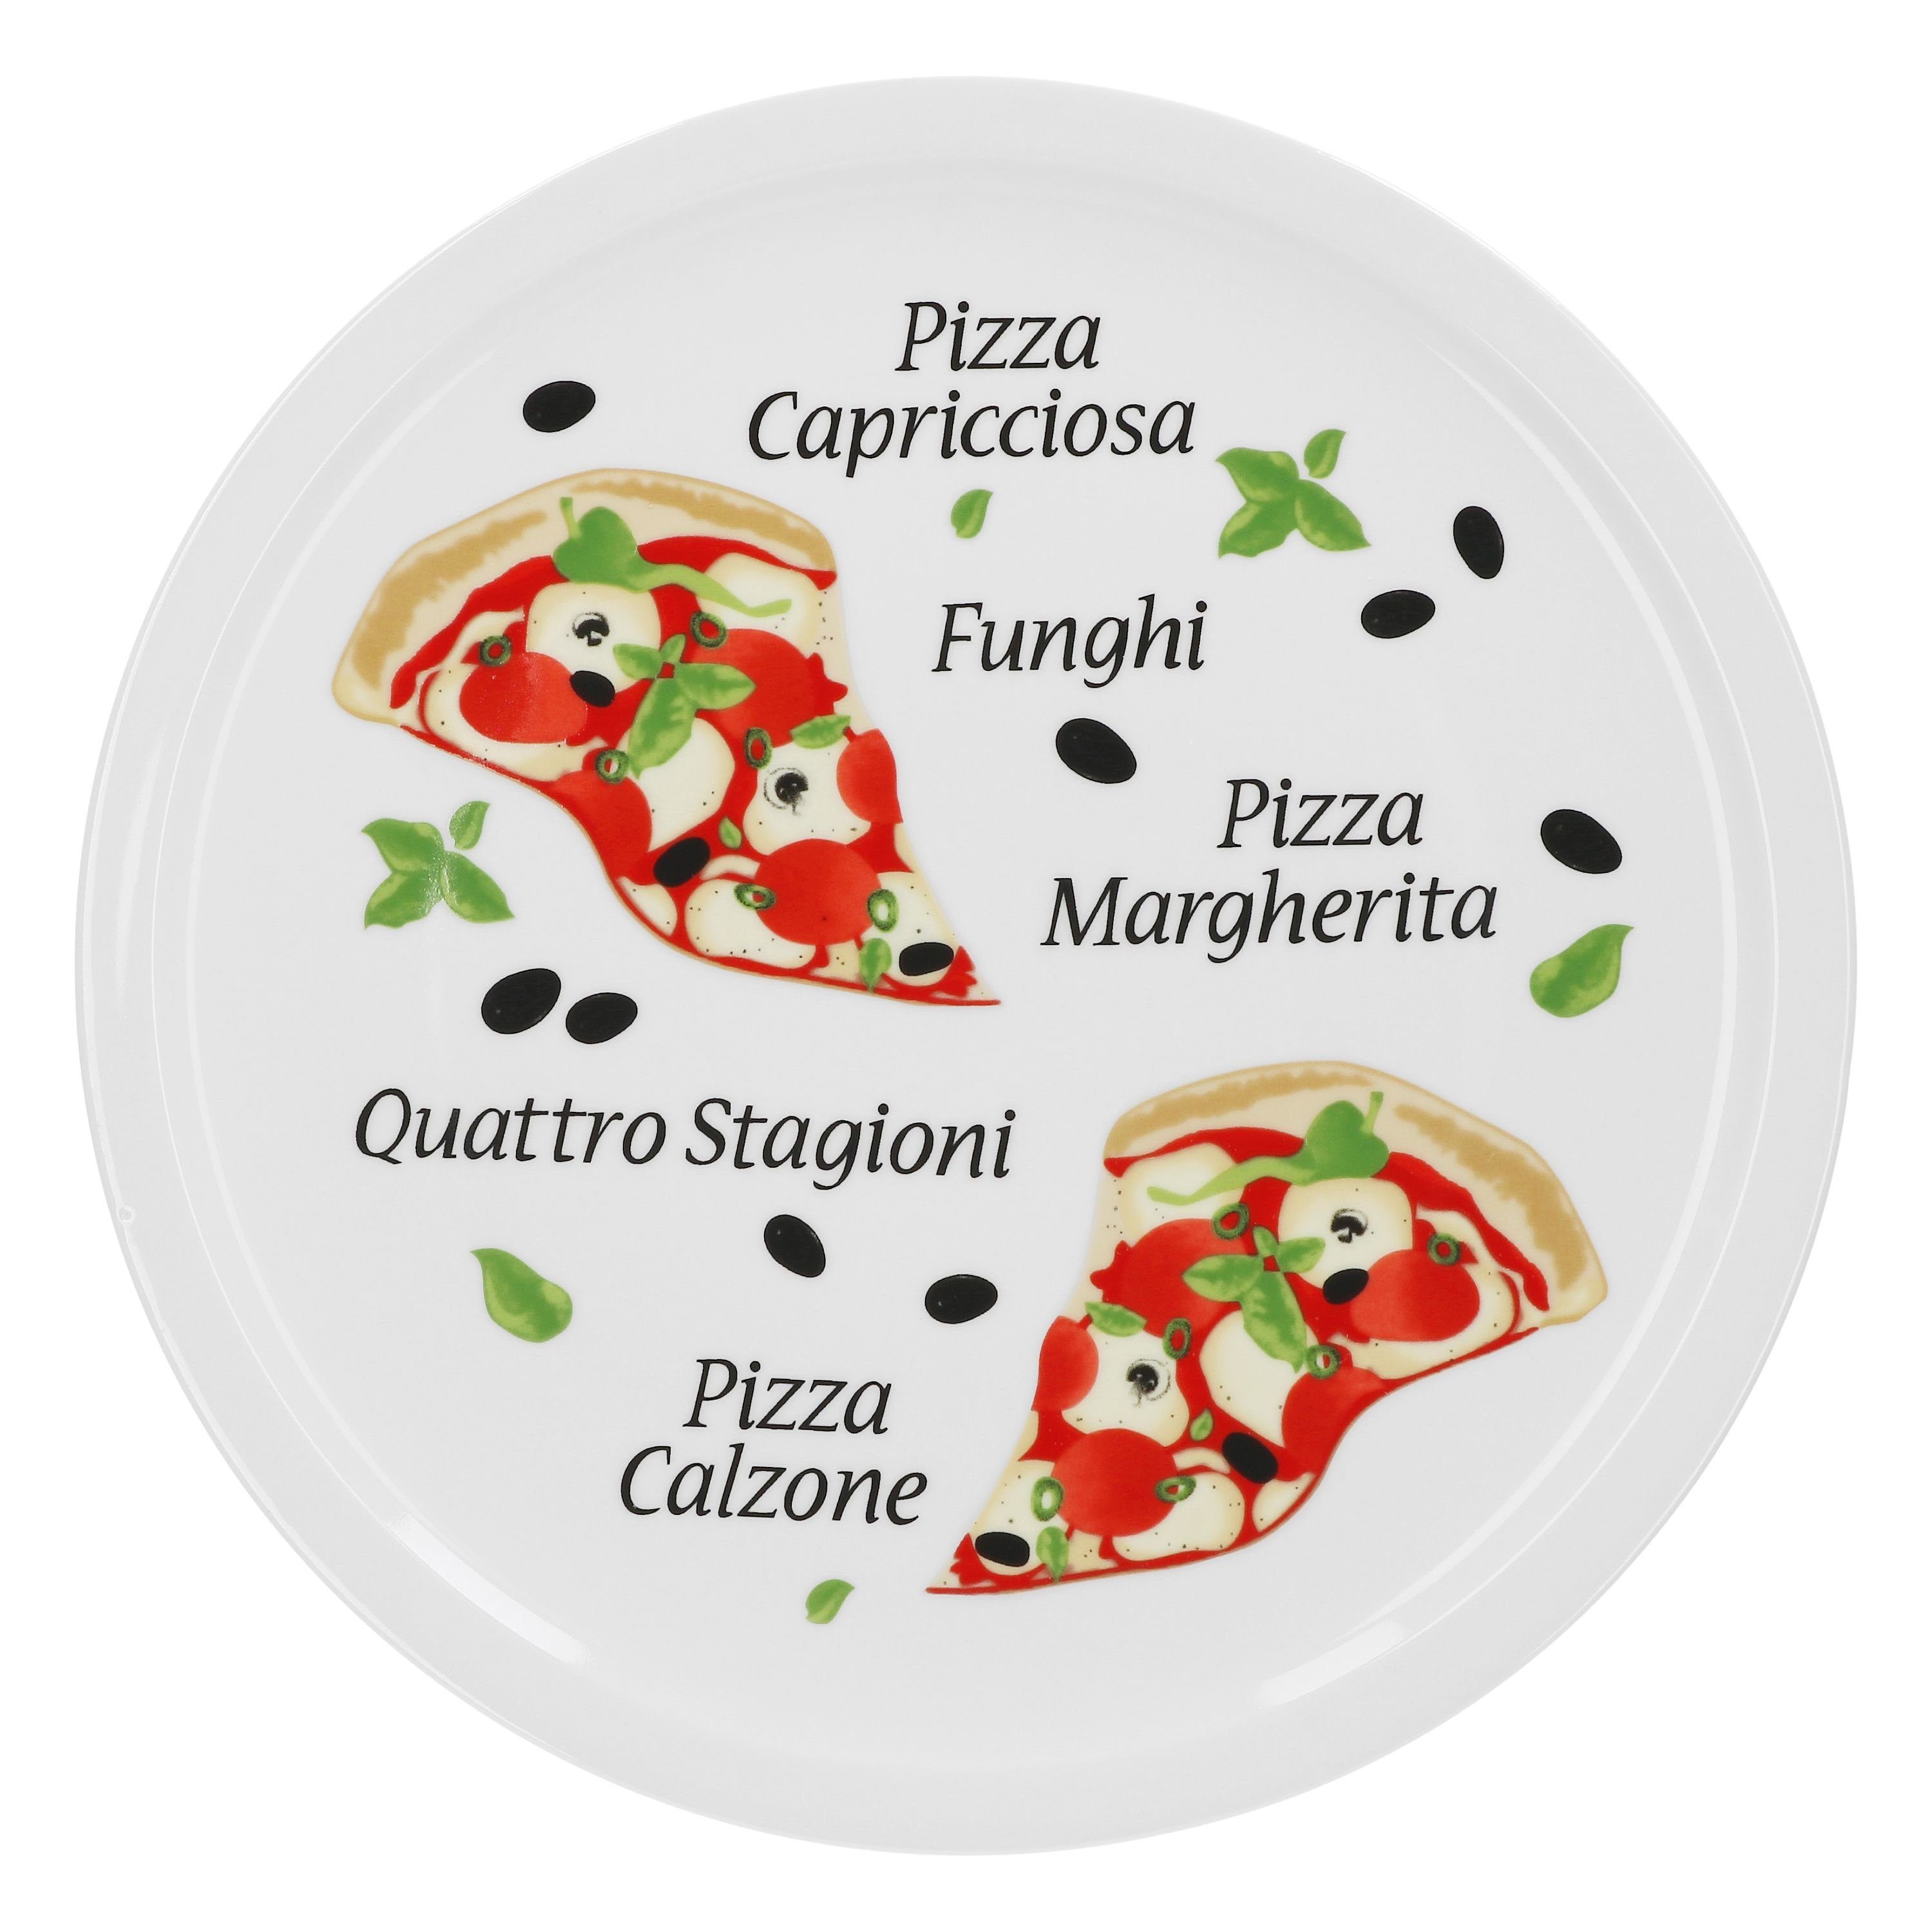 VAN WELL Pizza Plato Margherita Grande   para Pizza/Pasta los Grandes Hambre o para anrichten Adecuado  30,5 cm Plato de Porcelana con un Precioso Diseño  